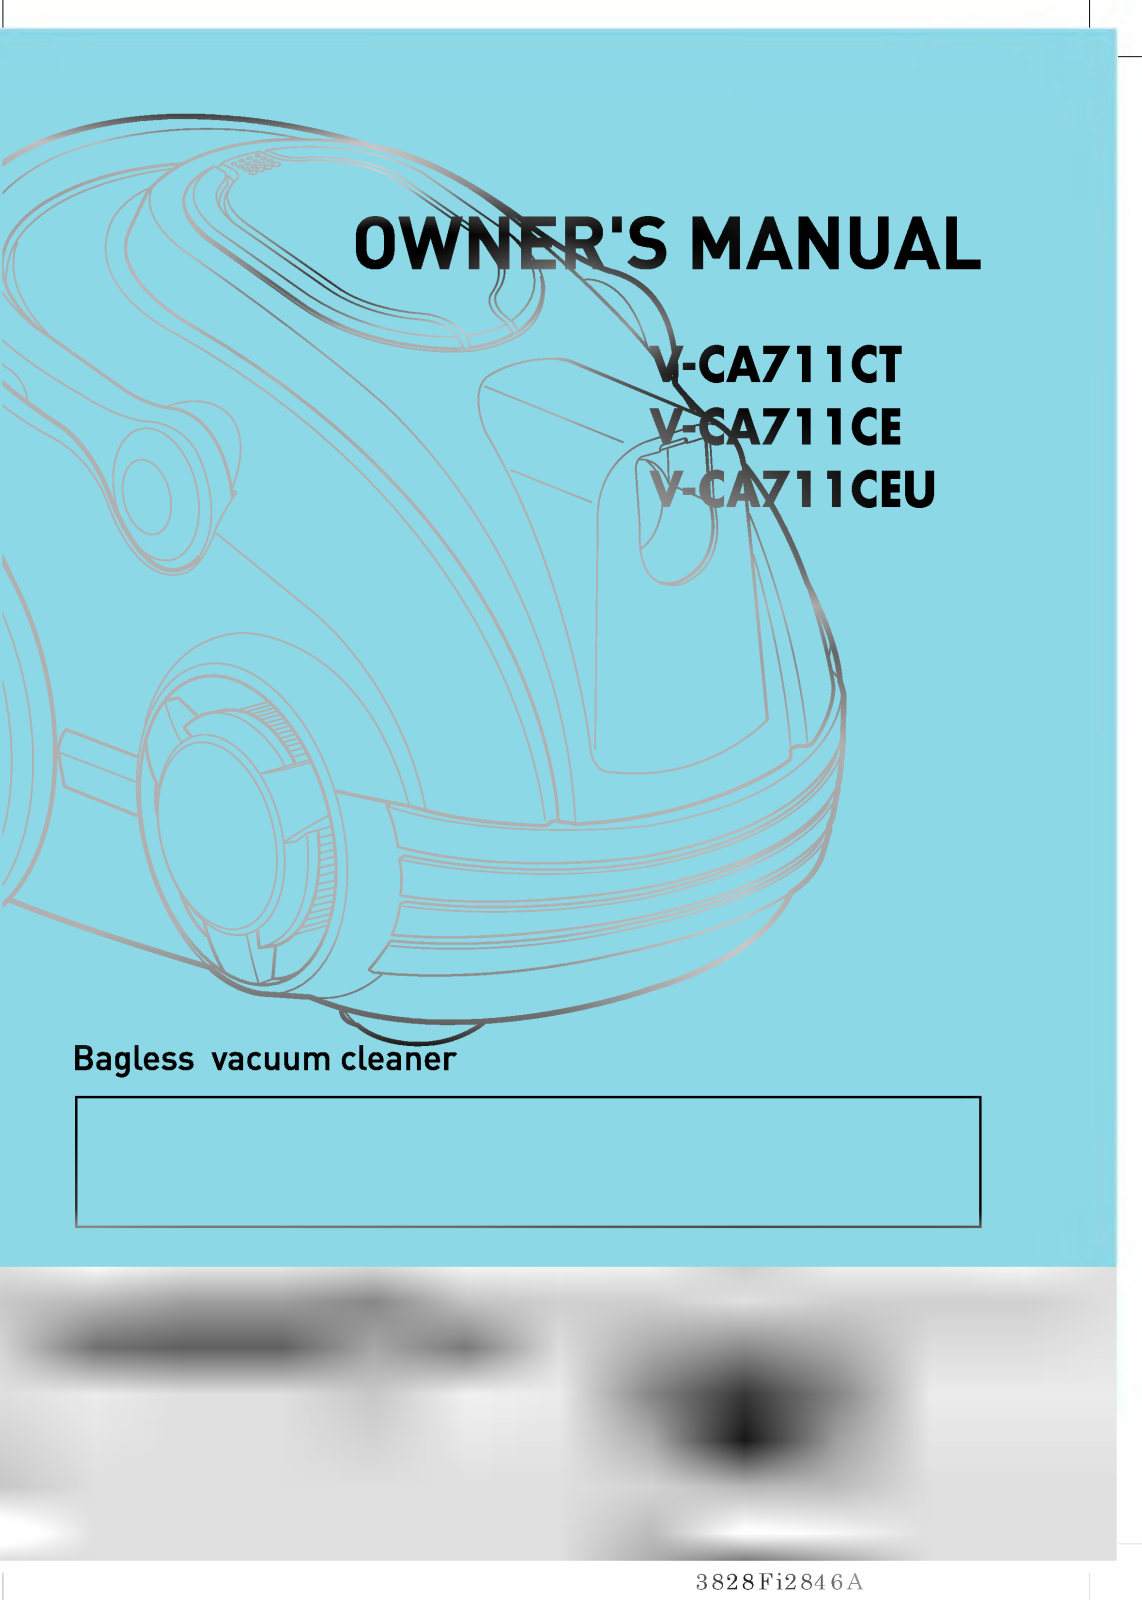 LG V-CA711CEU Owner’s Manual